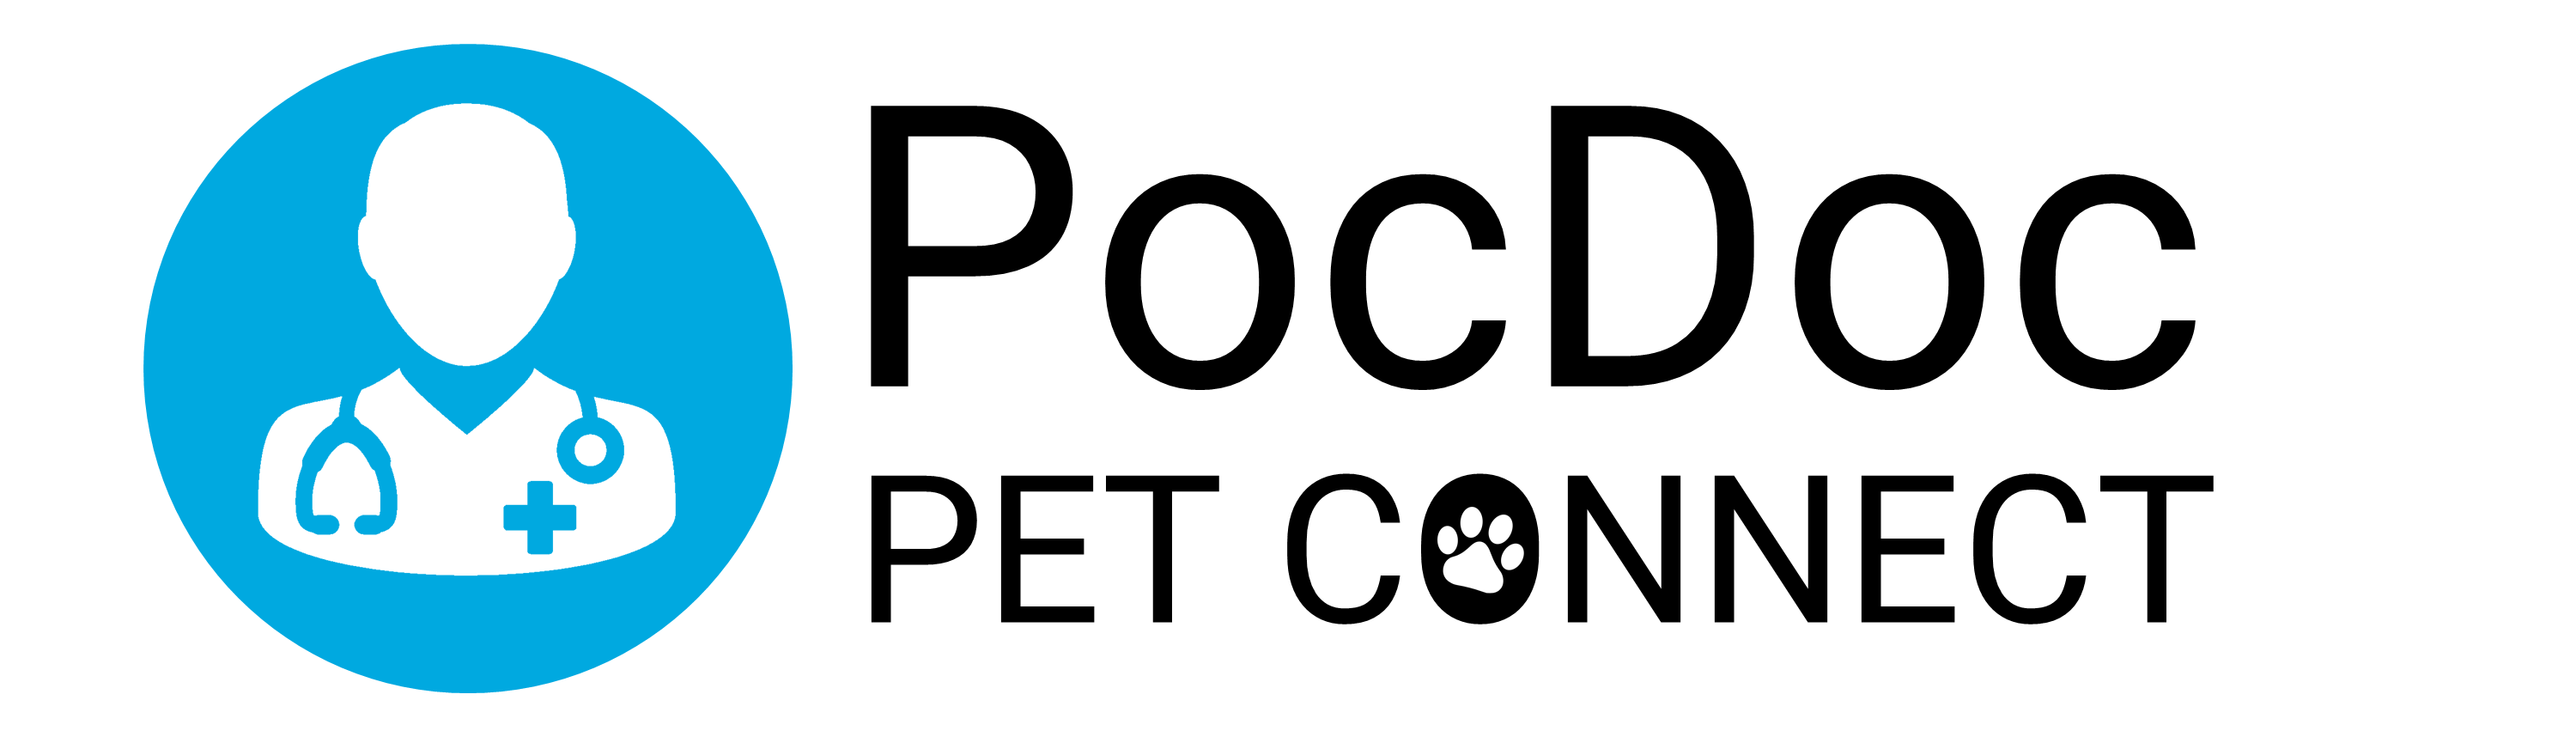 Home - PocDoc Pet